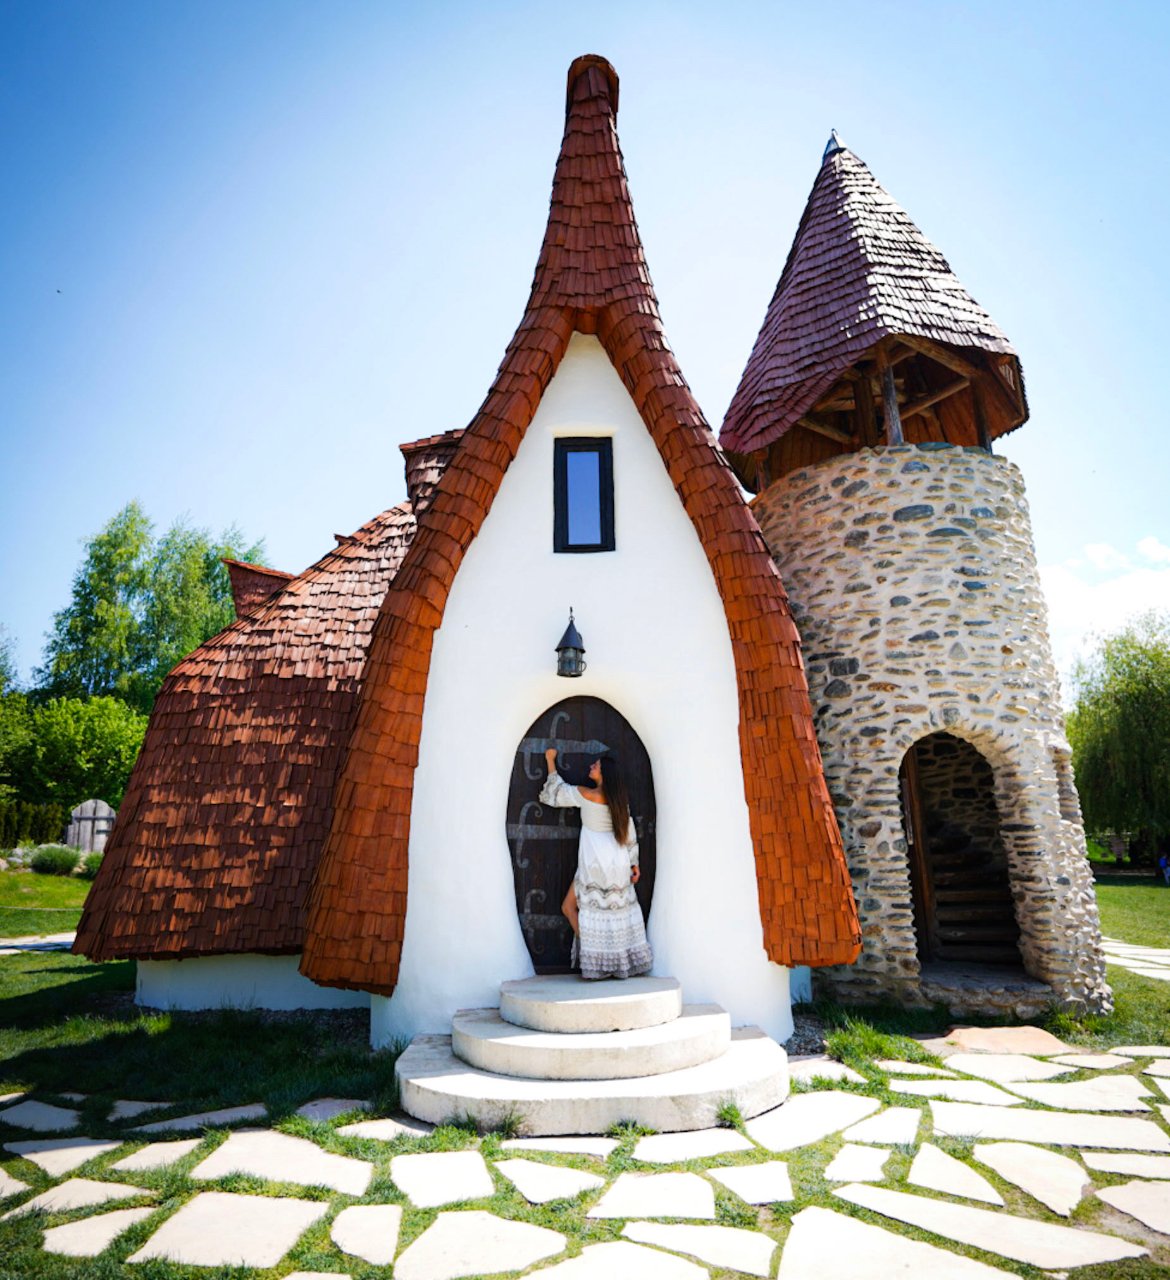 Castelul de Lut, Transylvania in Romania